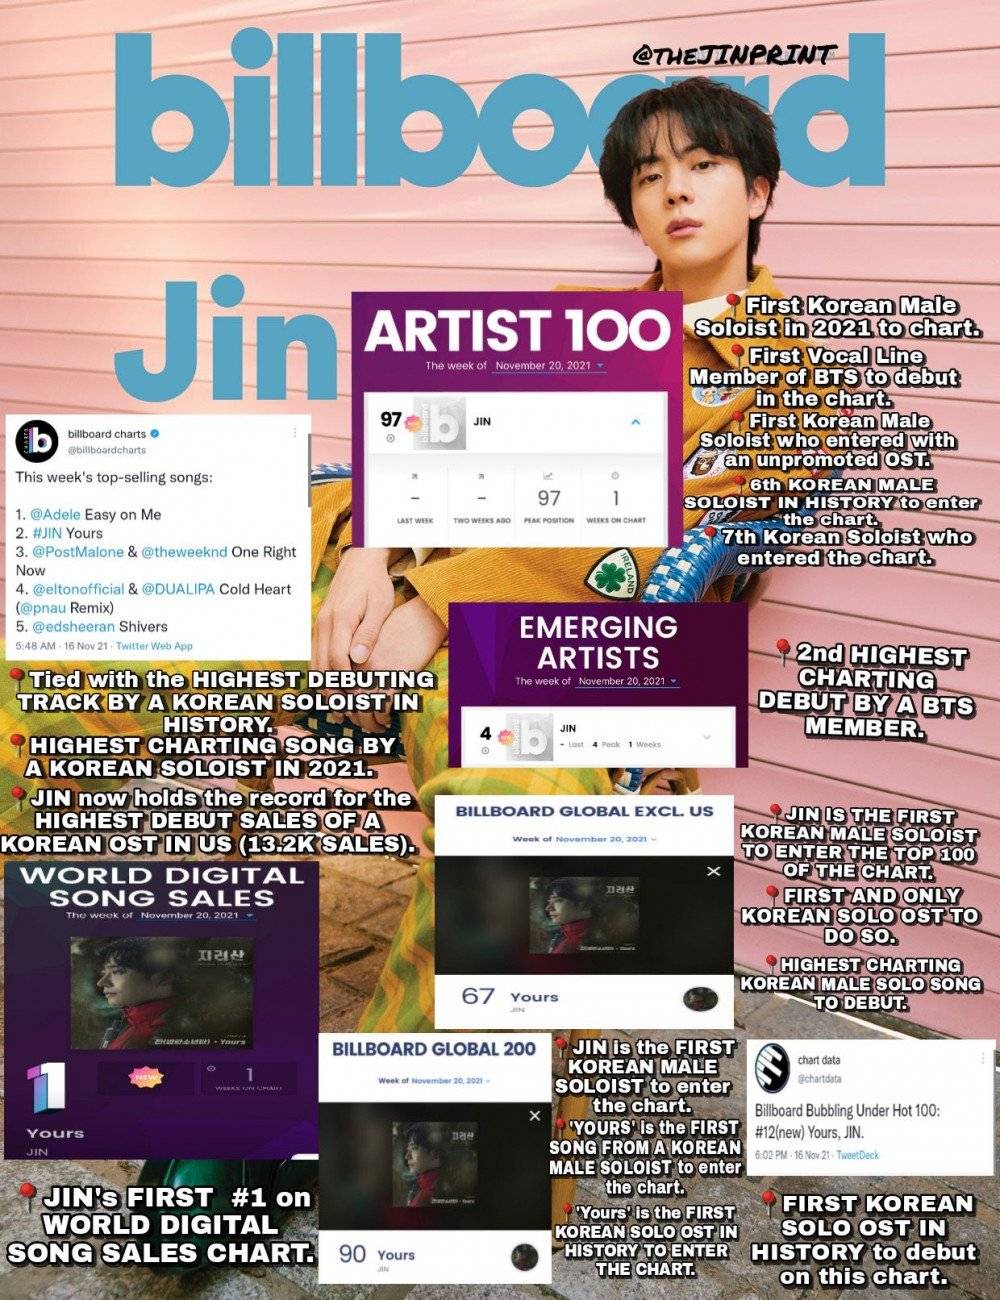 นิตยสาร Forbes ยกย่องให้ จิน BTS เป็นศิลปินเค-ป็อปชายแห่งปี!